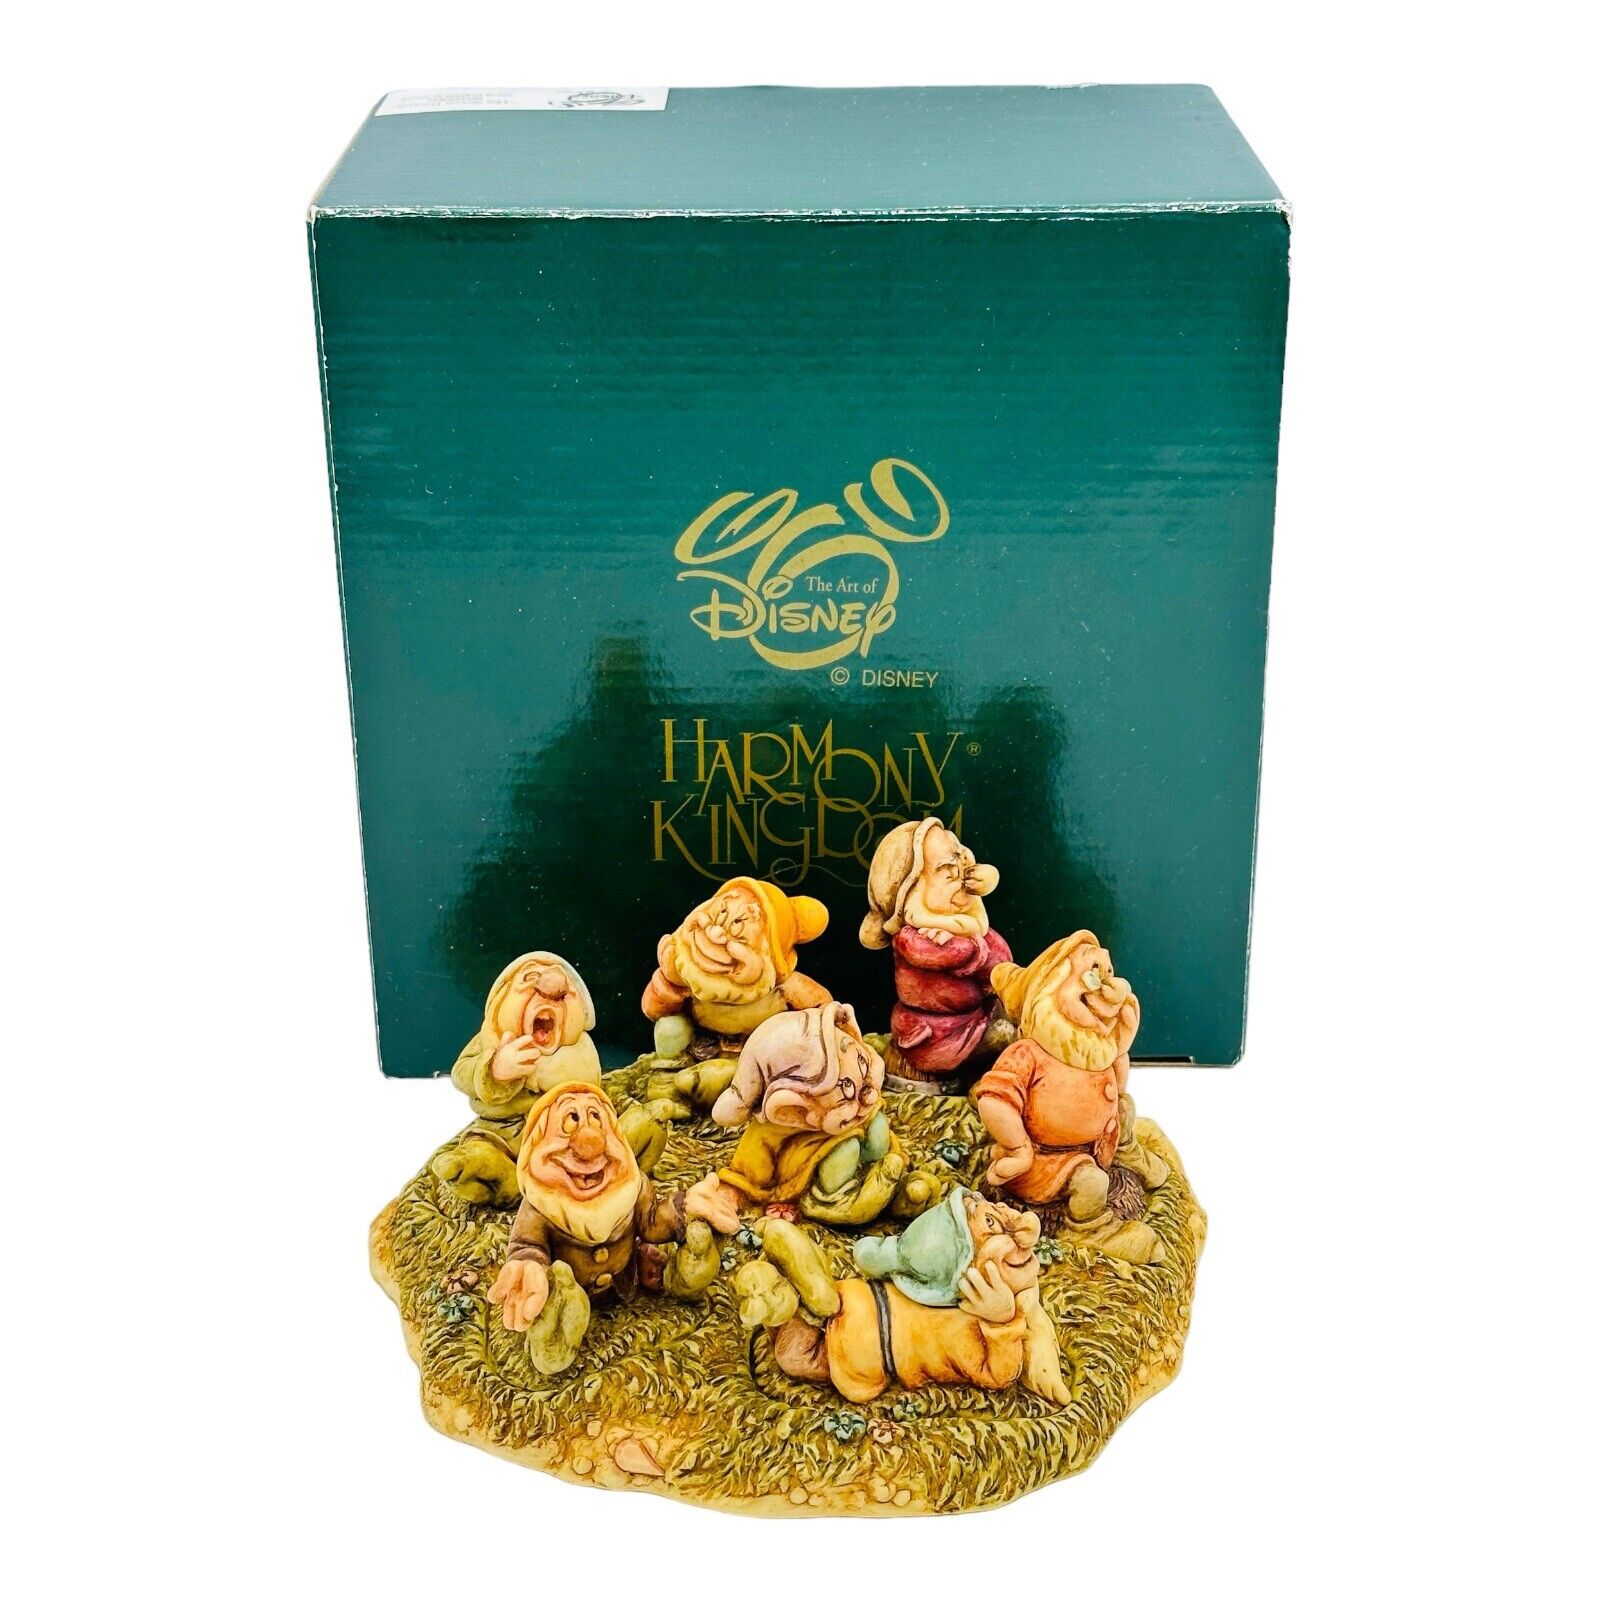 Disney Harmony Kingdom The Seven Dwarfs Figurine Snow White WDWSD NEW IN BOX